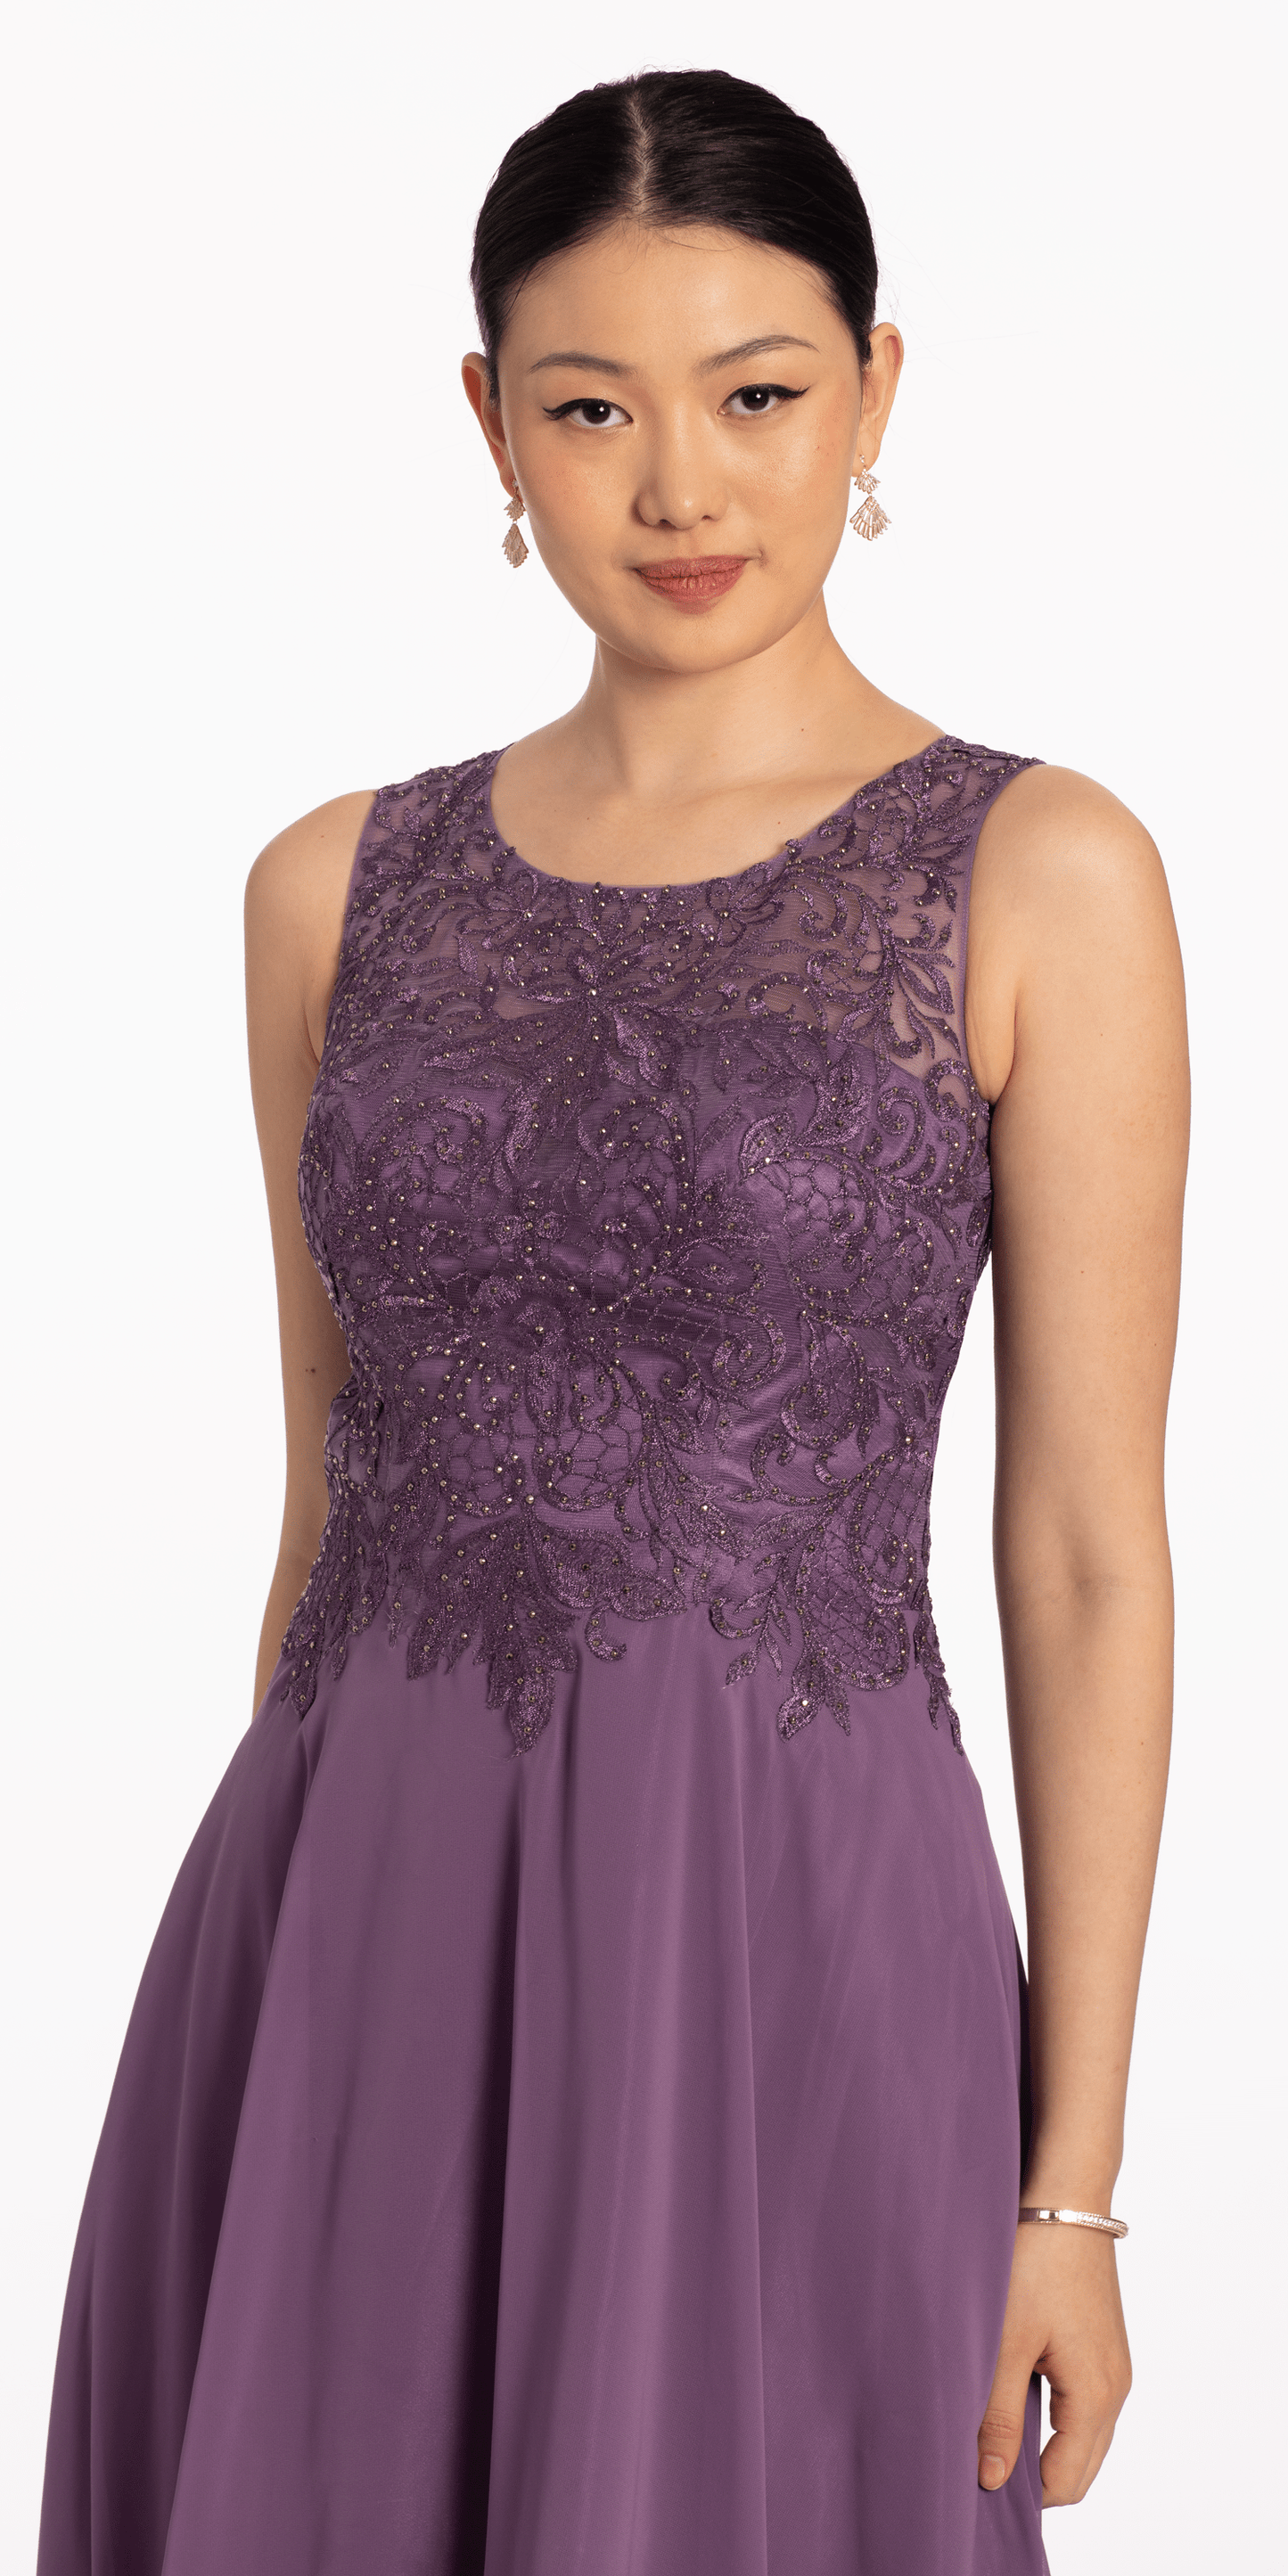 Camille La Vie Beaded Bodice Chiffon A Line Dress missy / 08 / dusty-purple